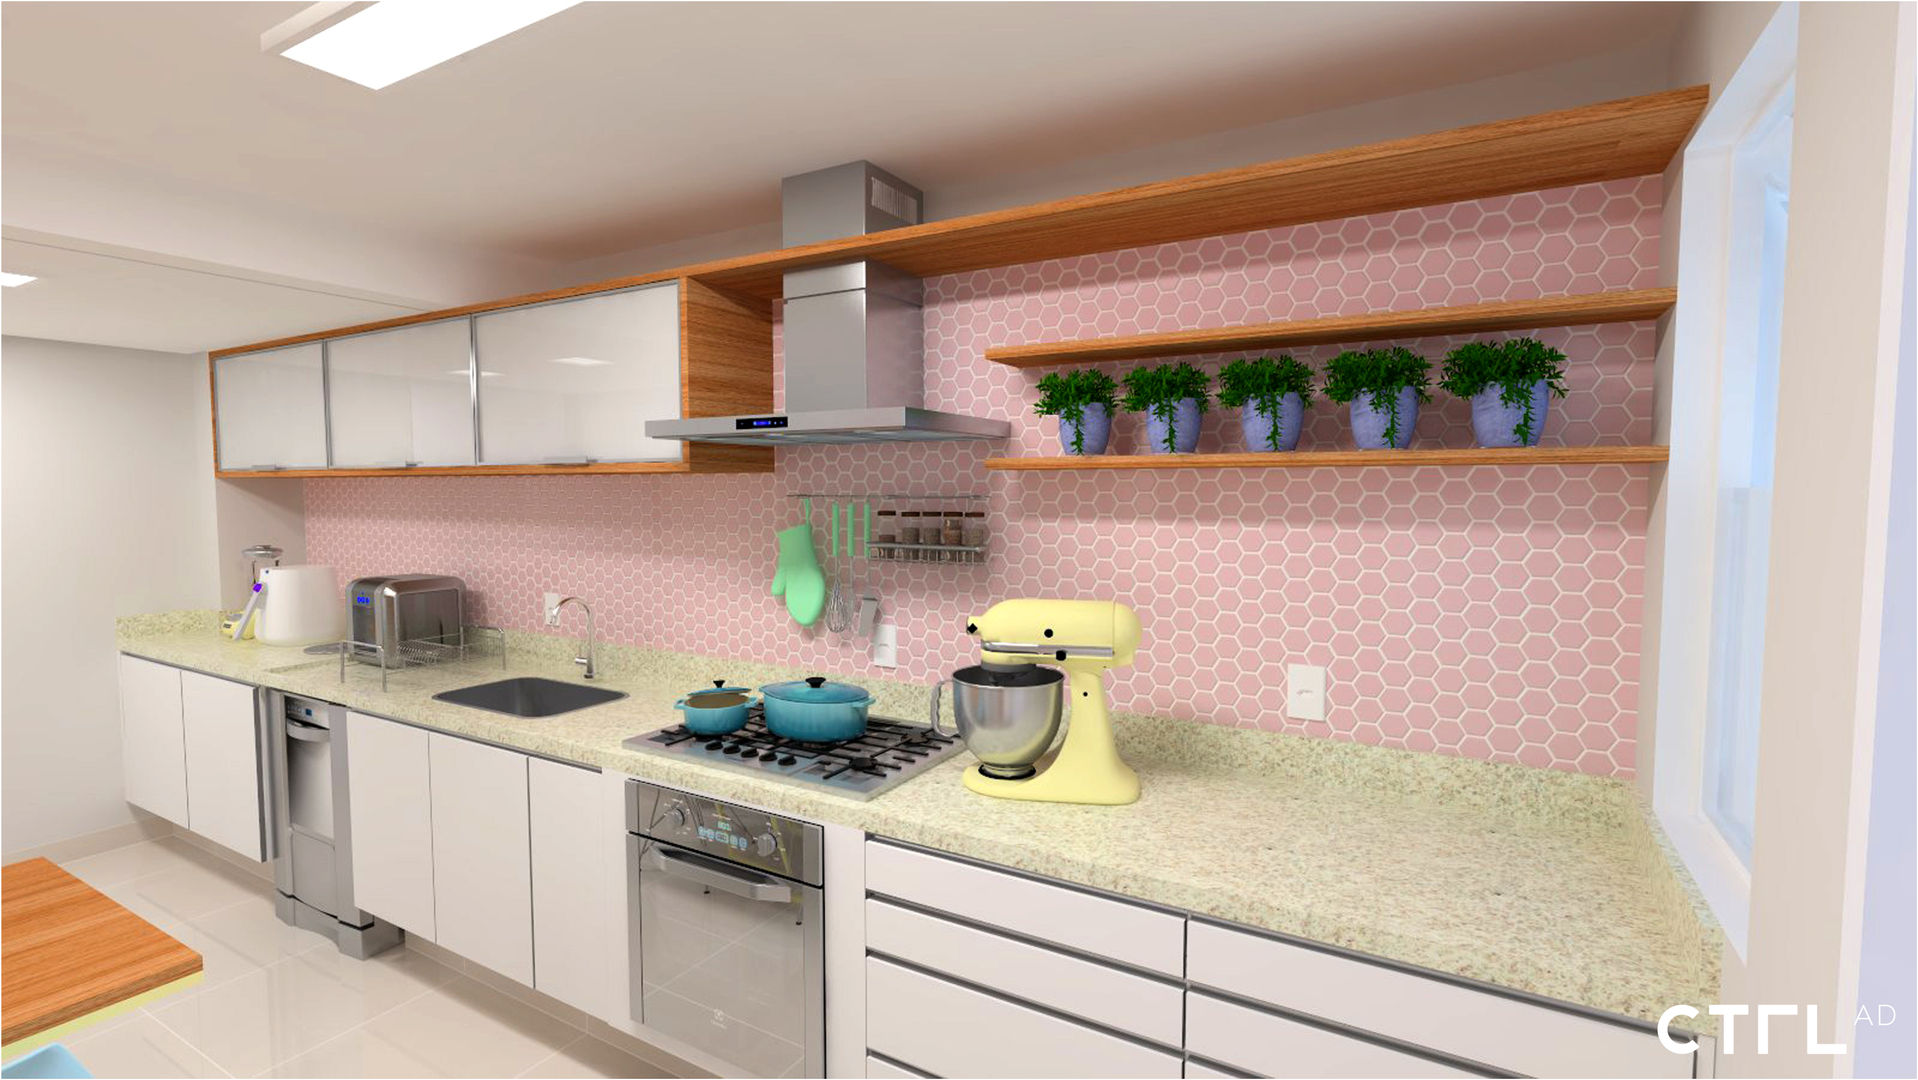 Cozinha Candy Colors, CTRL | interior design CTRL | interior design مطبخ